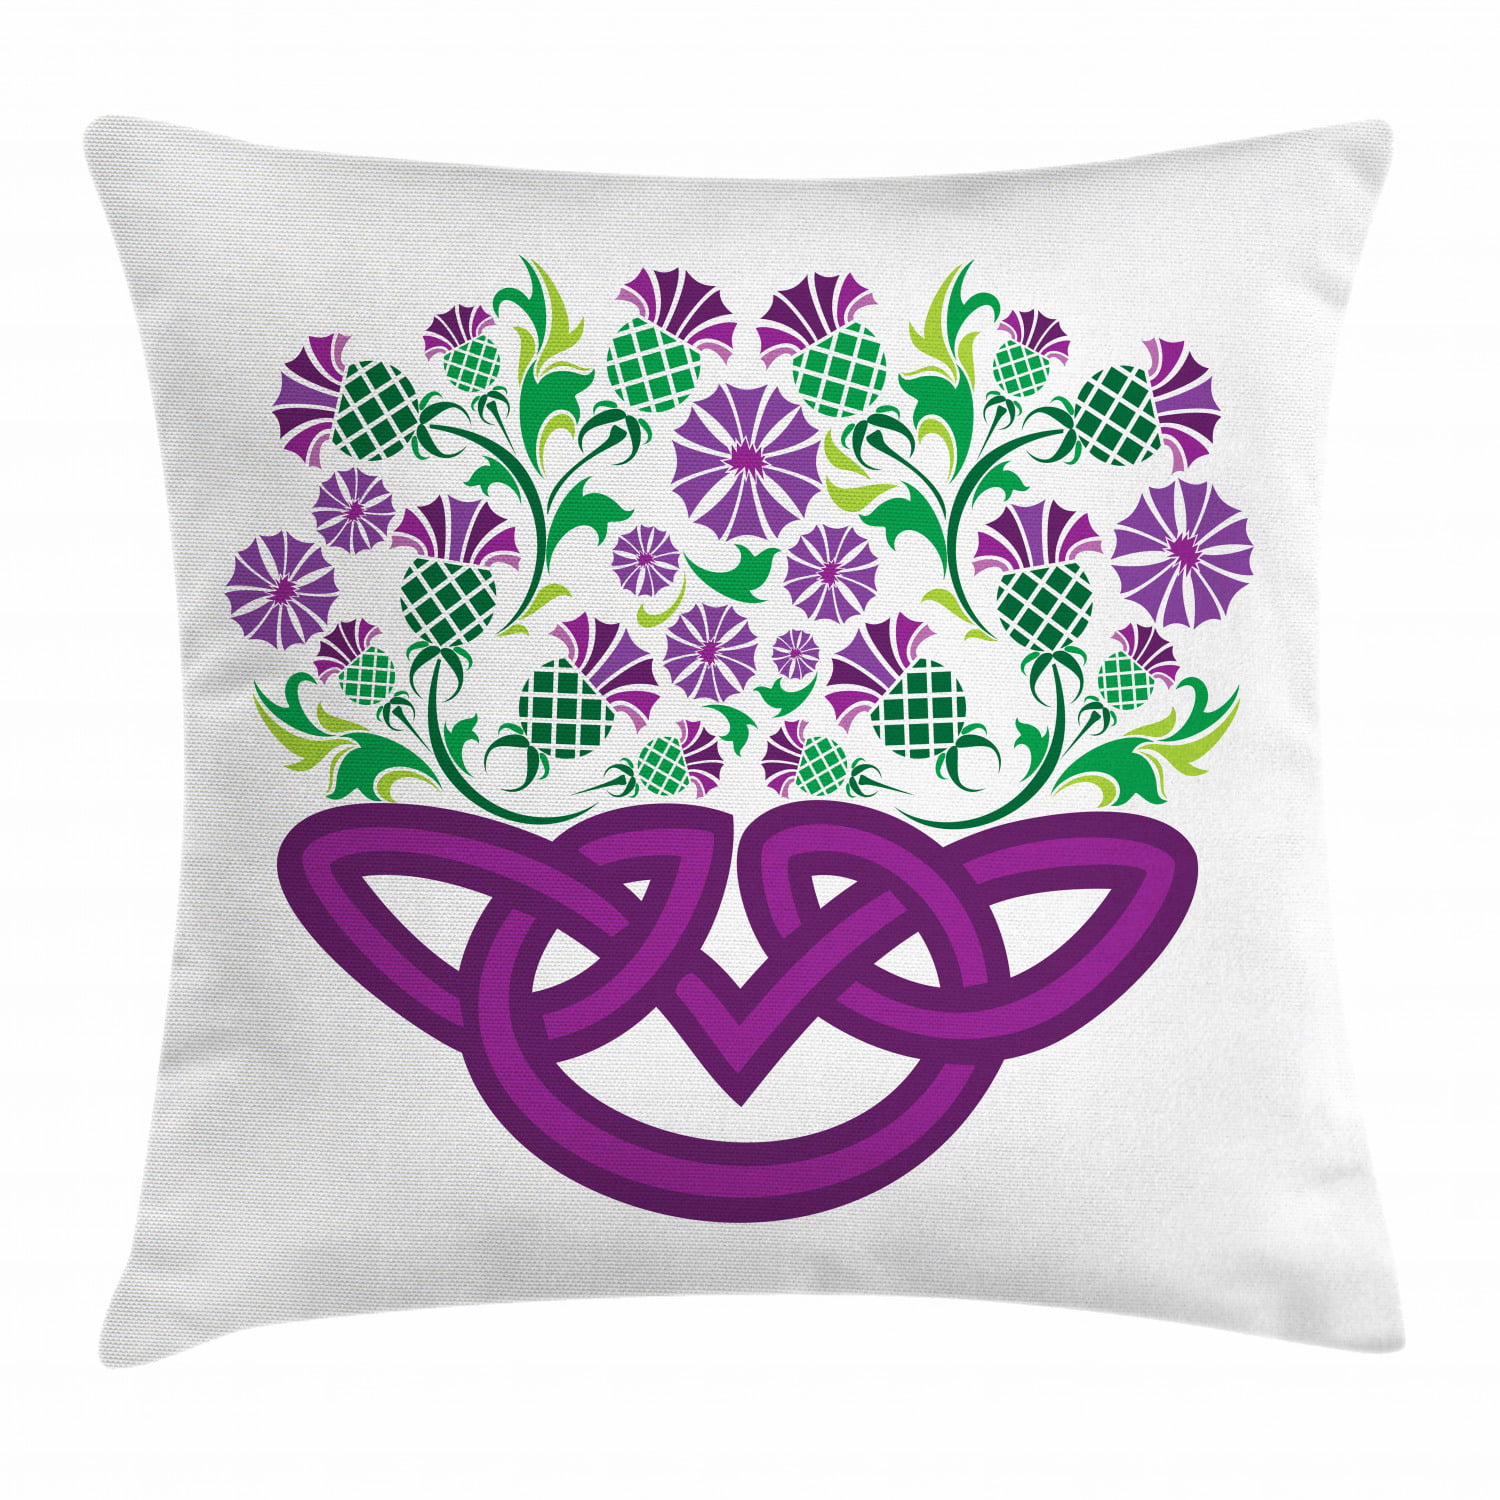 16” Thistle Print Cream Purple Green Cushion Cover